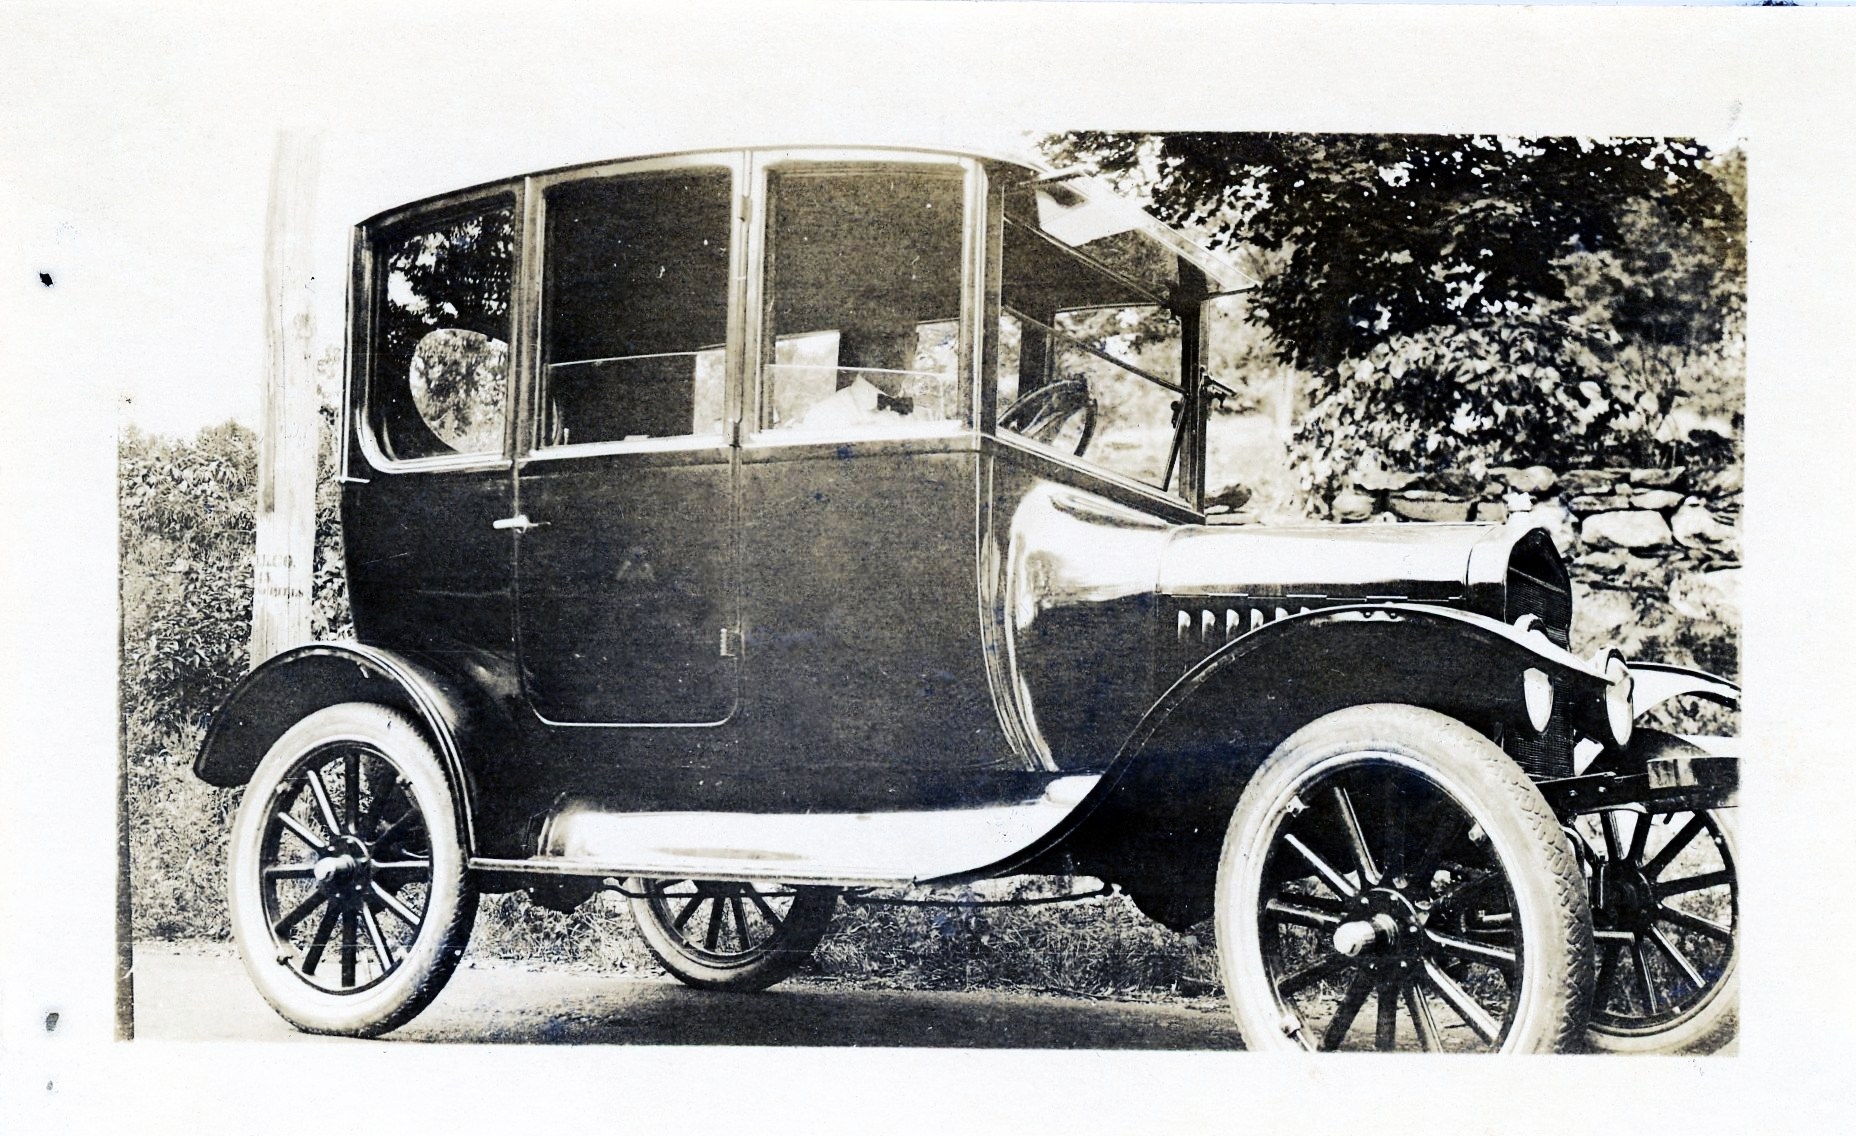 Howard Van Buskirk, 1920 Ford